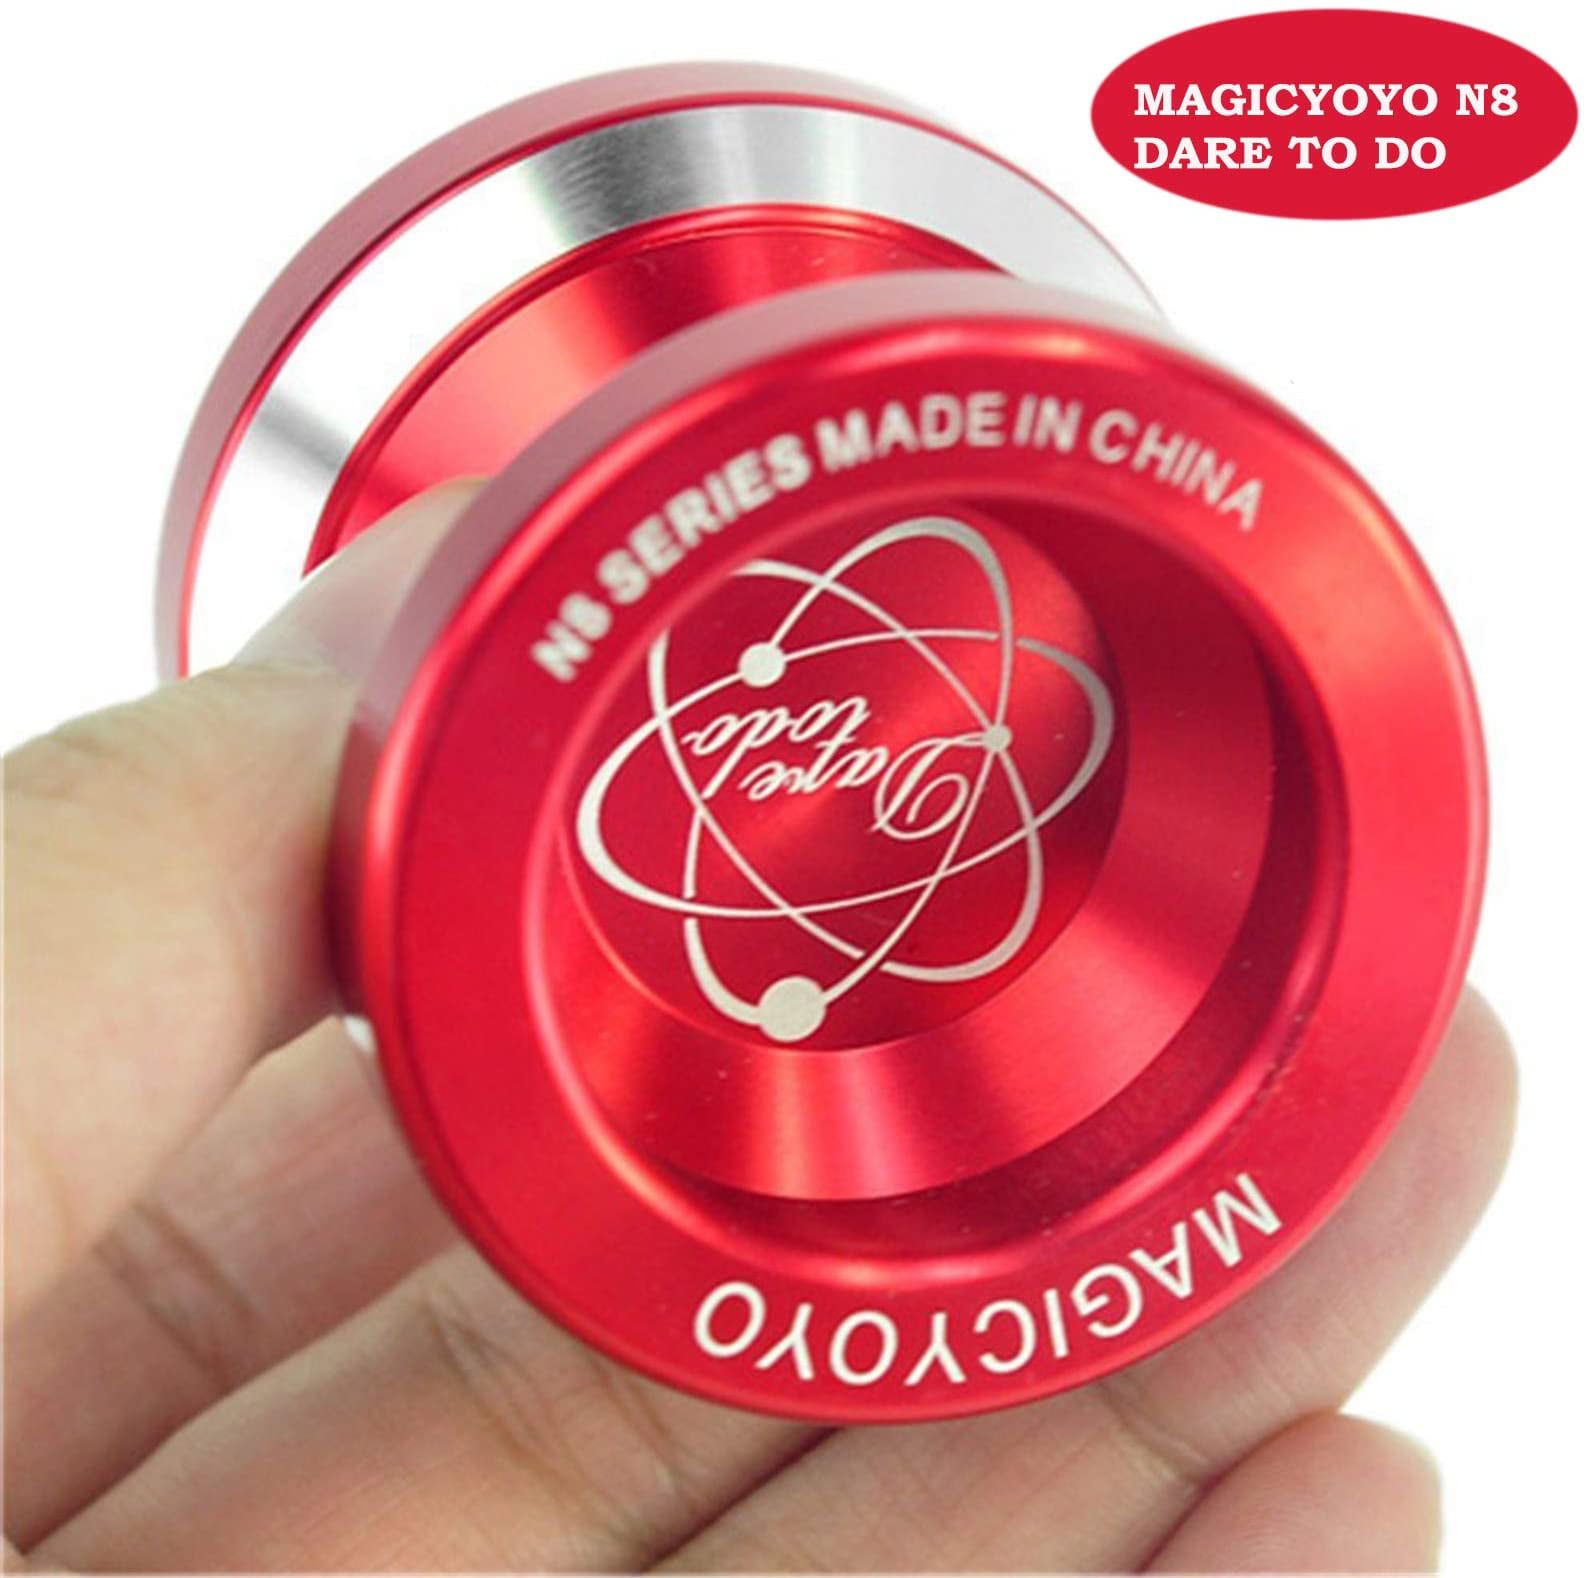 Hot Blue Magic YoYo N8 Dare To Do Alloy Metal Aluminum Professional Yo-Yo Toy 